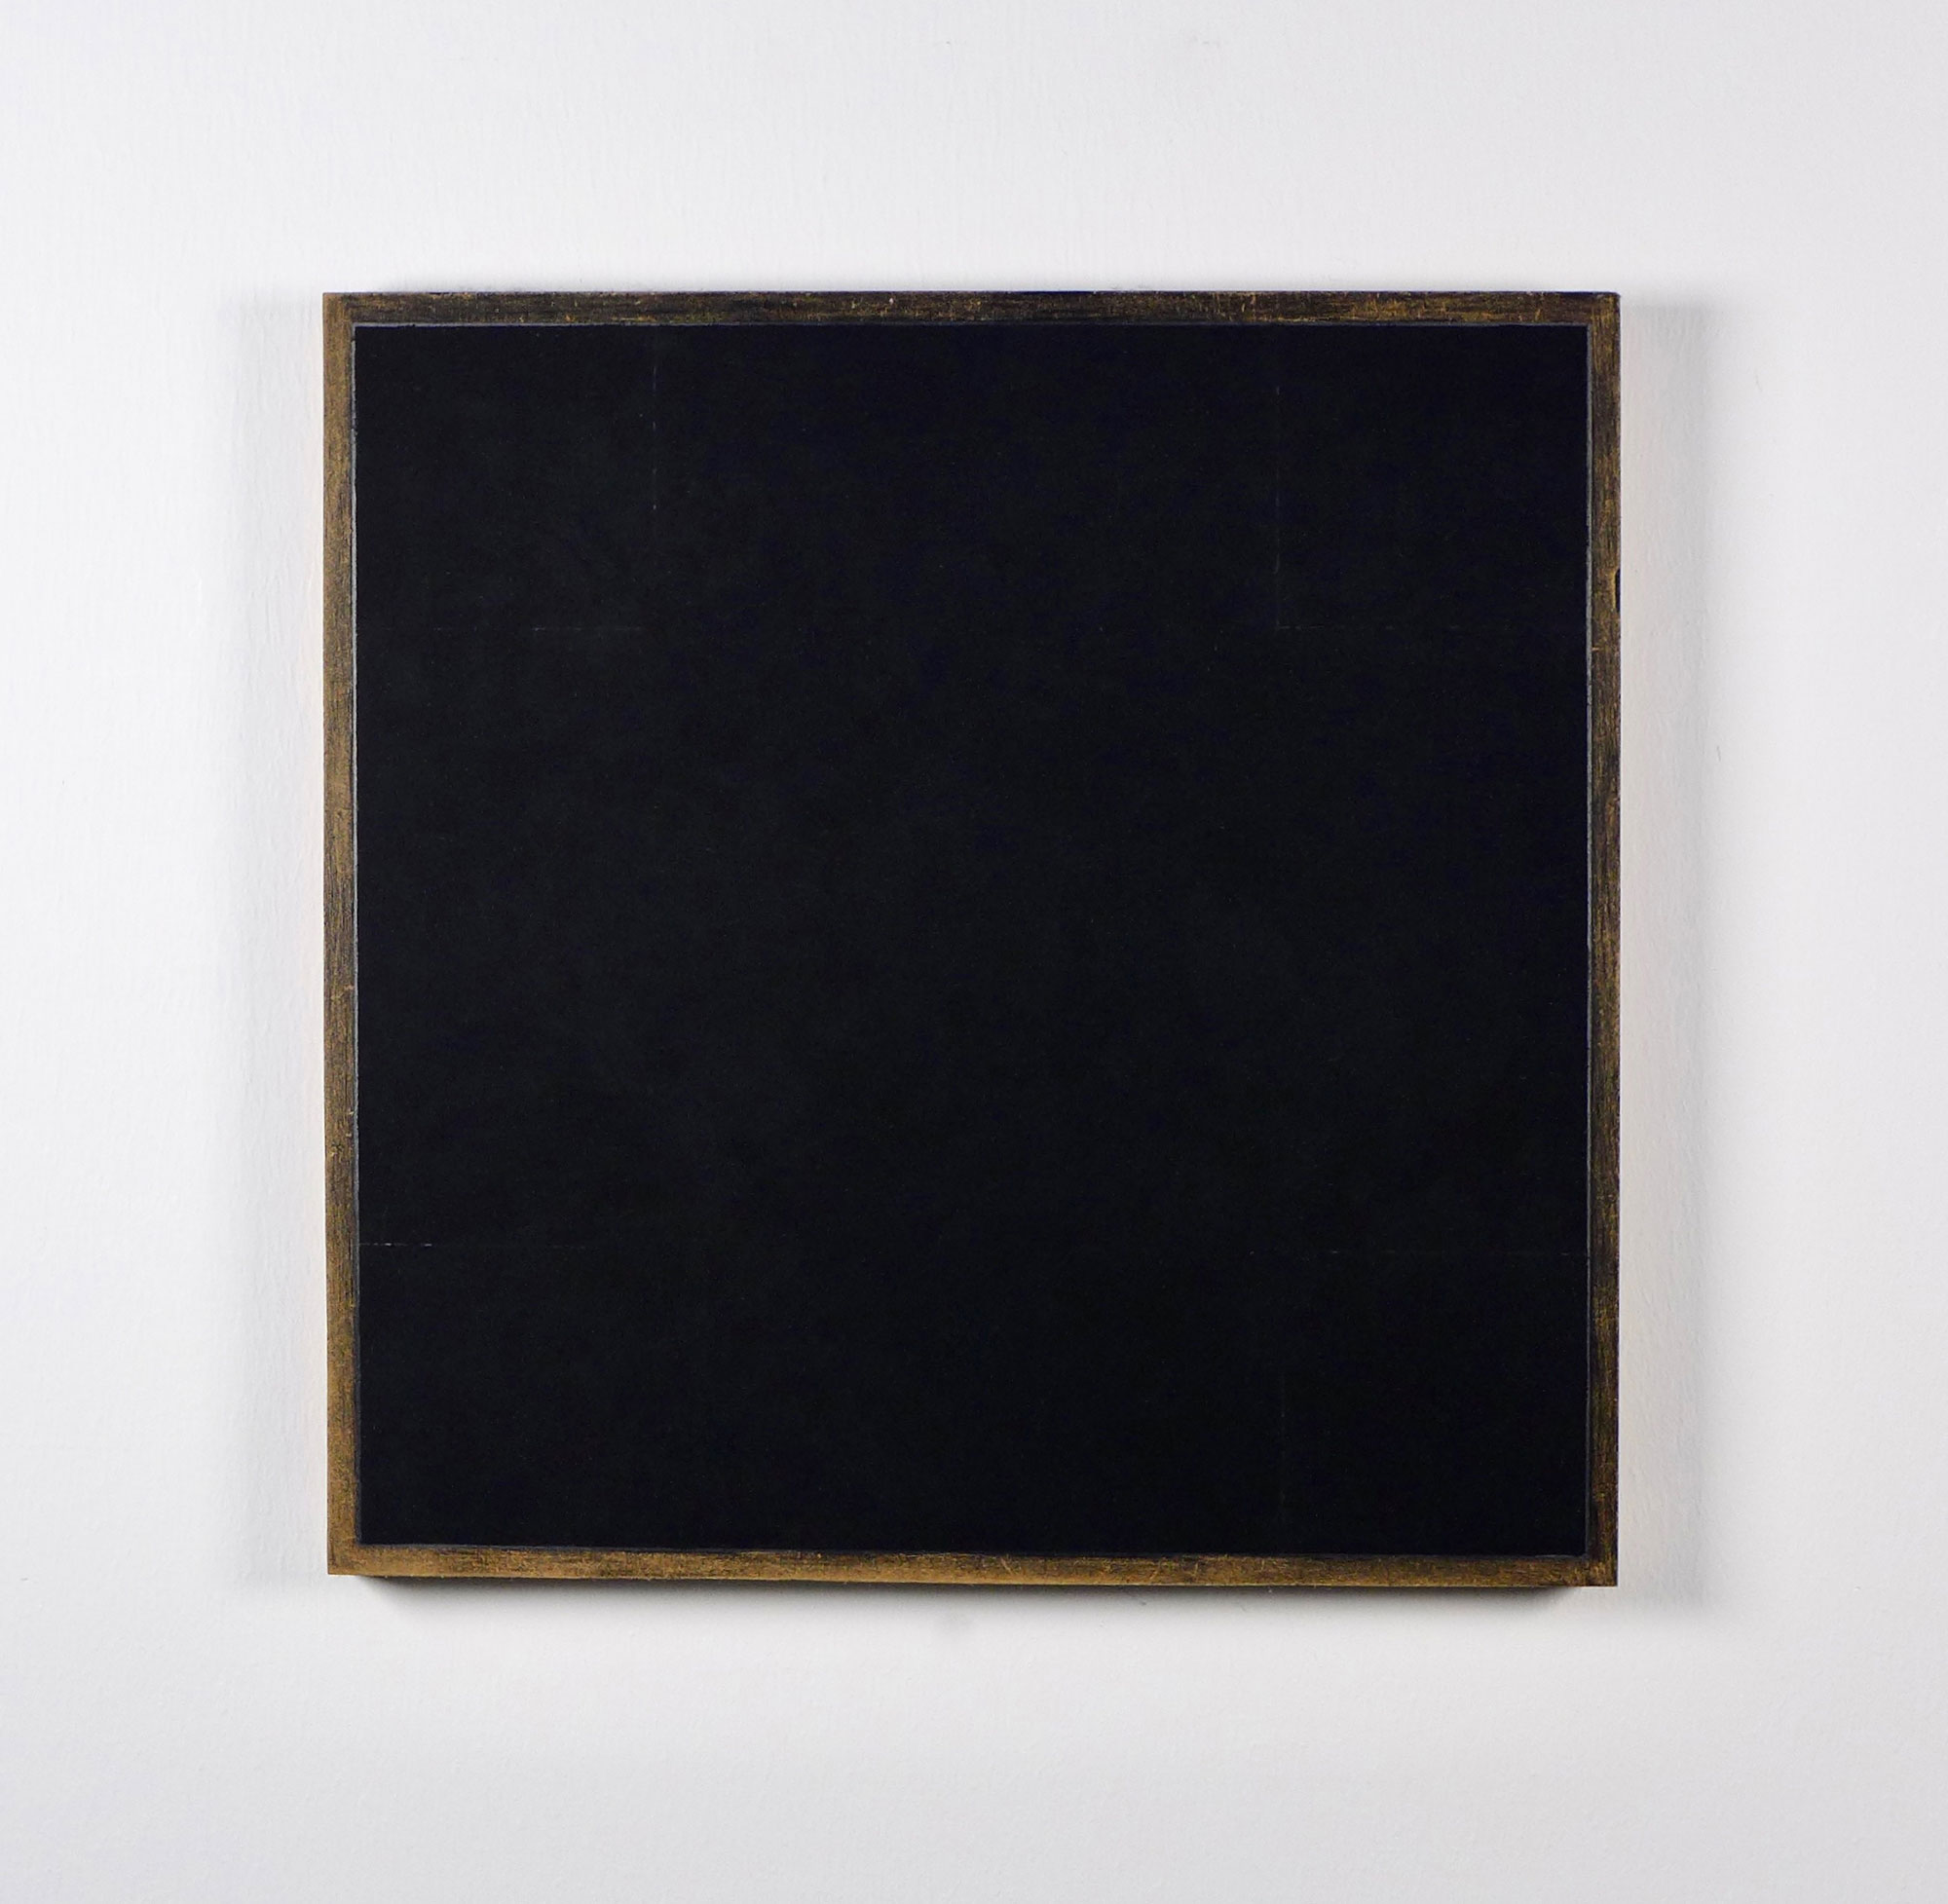 Kenneth Dingwall, Kasein Schwarz IV, 2012, casein and graphite on panel, 26.5cm x 26.5cm x 2cm